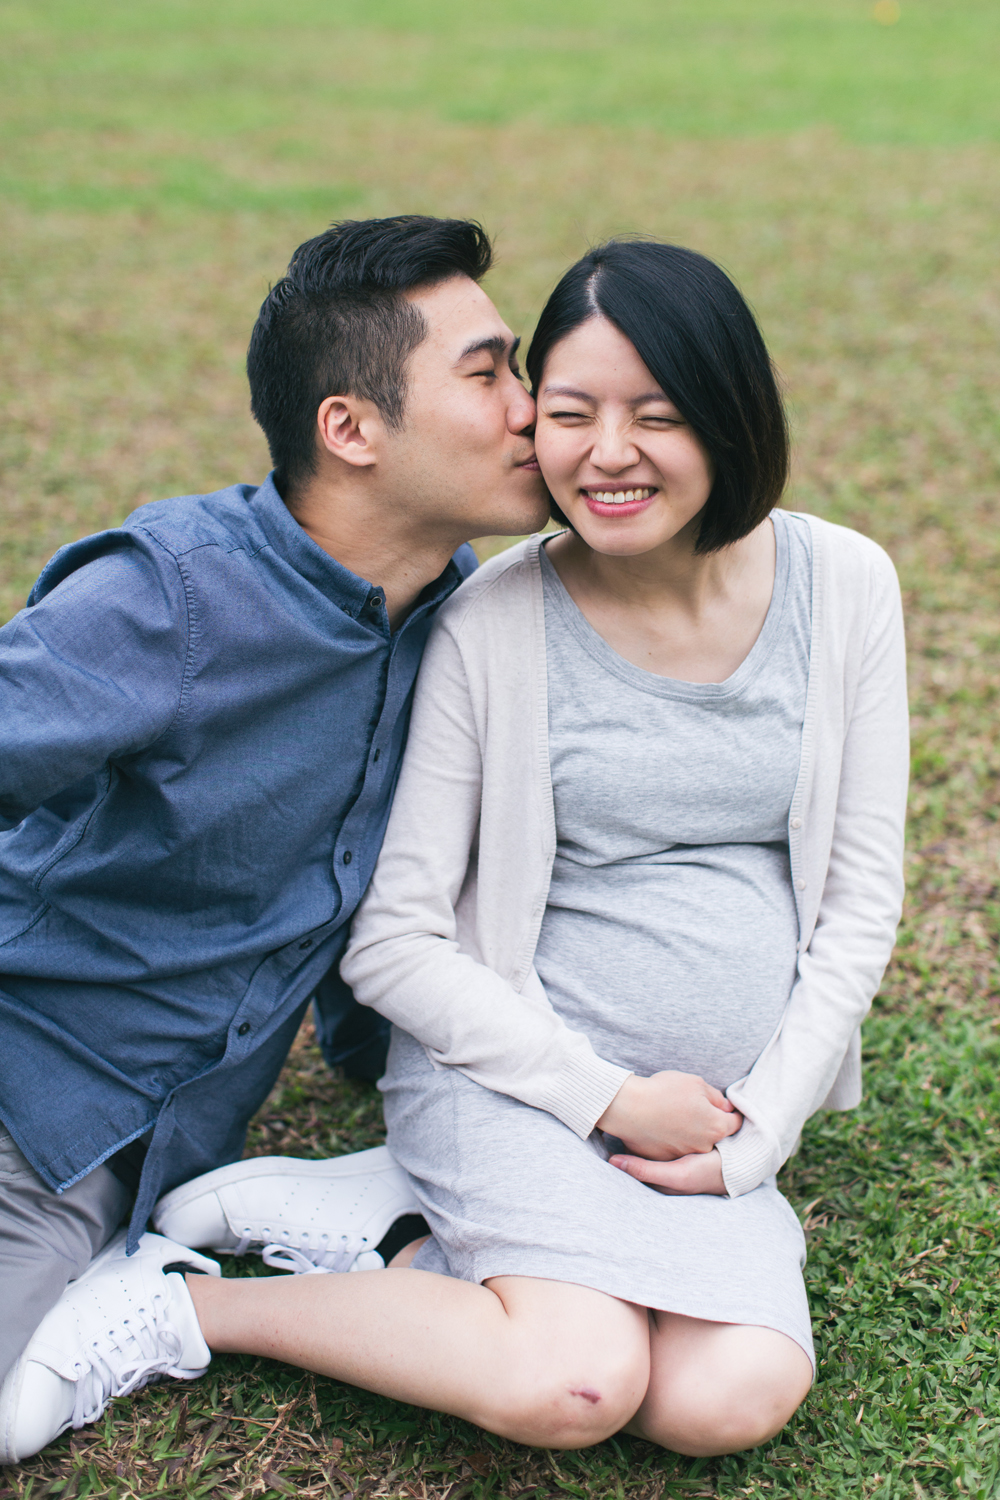 Hong Kong maternity photos • A sweet kiss